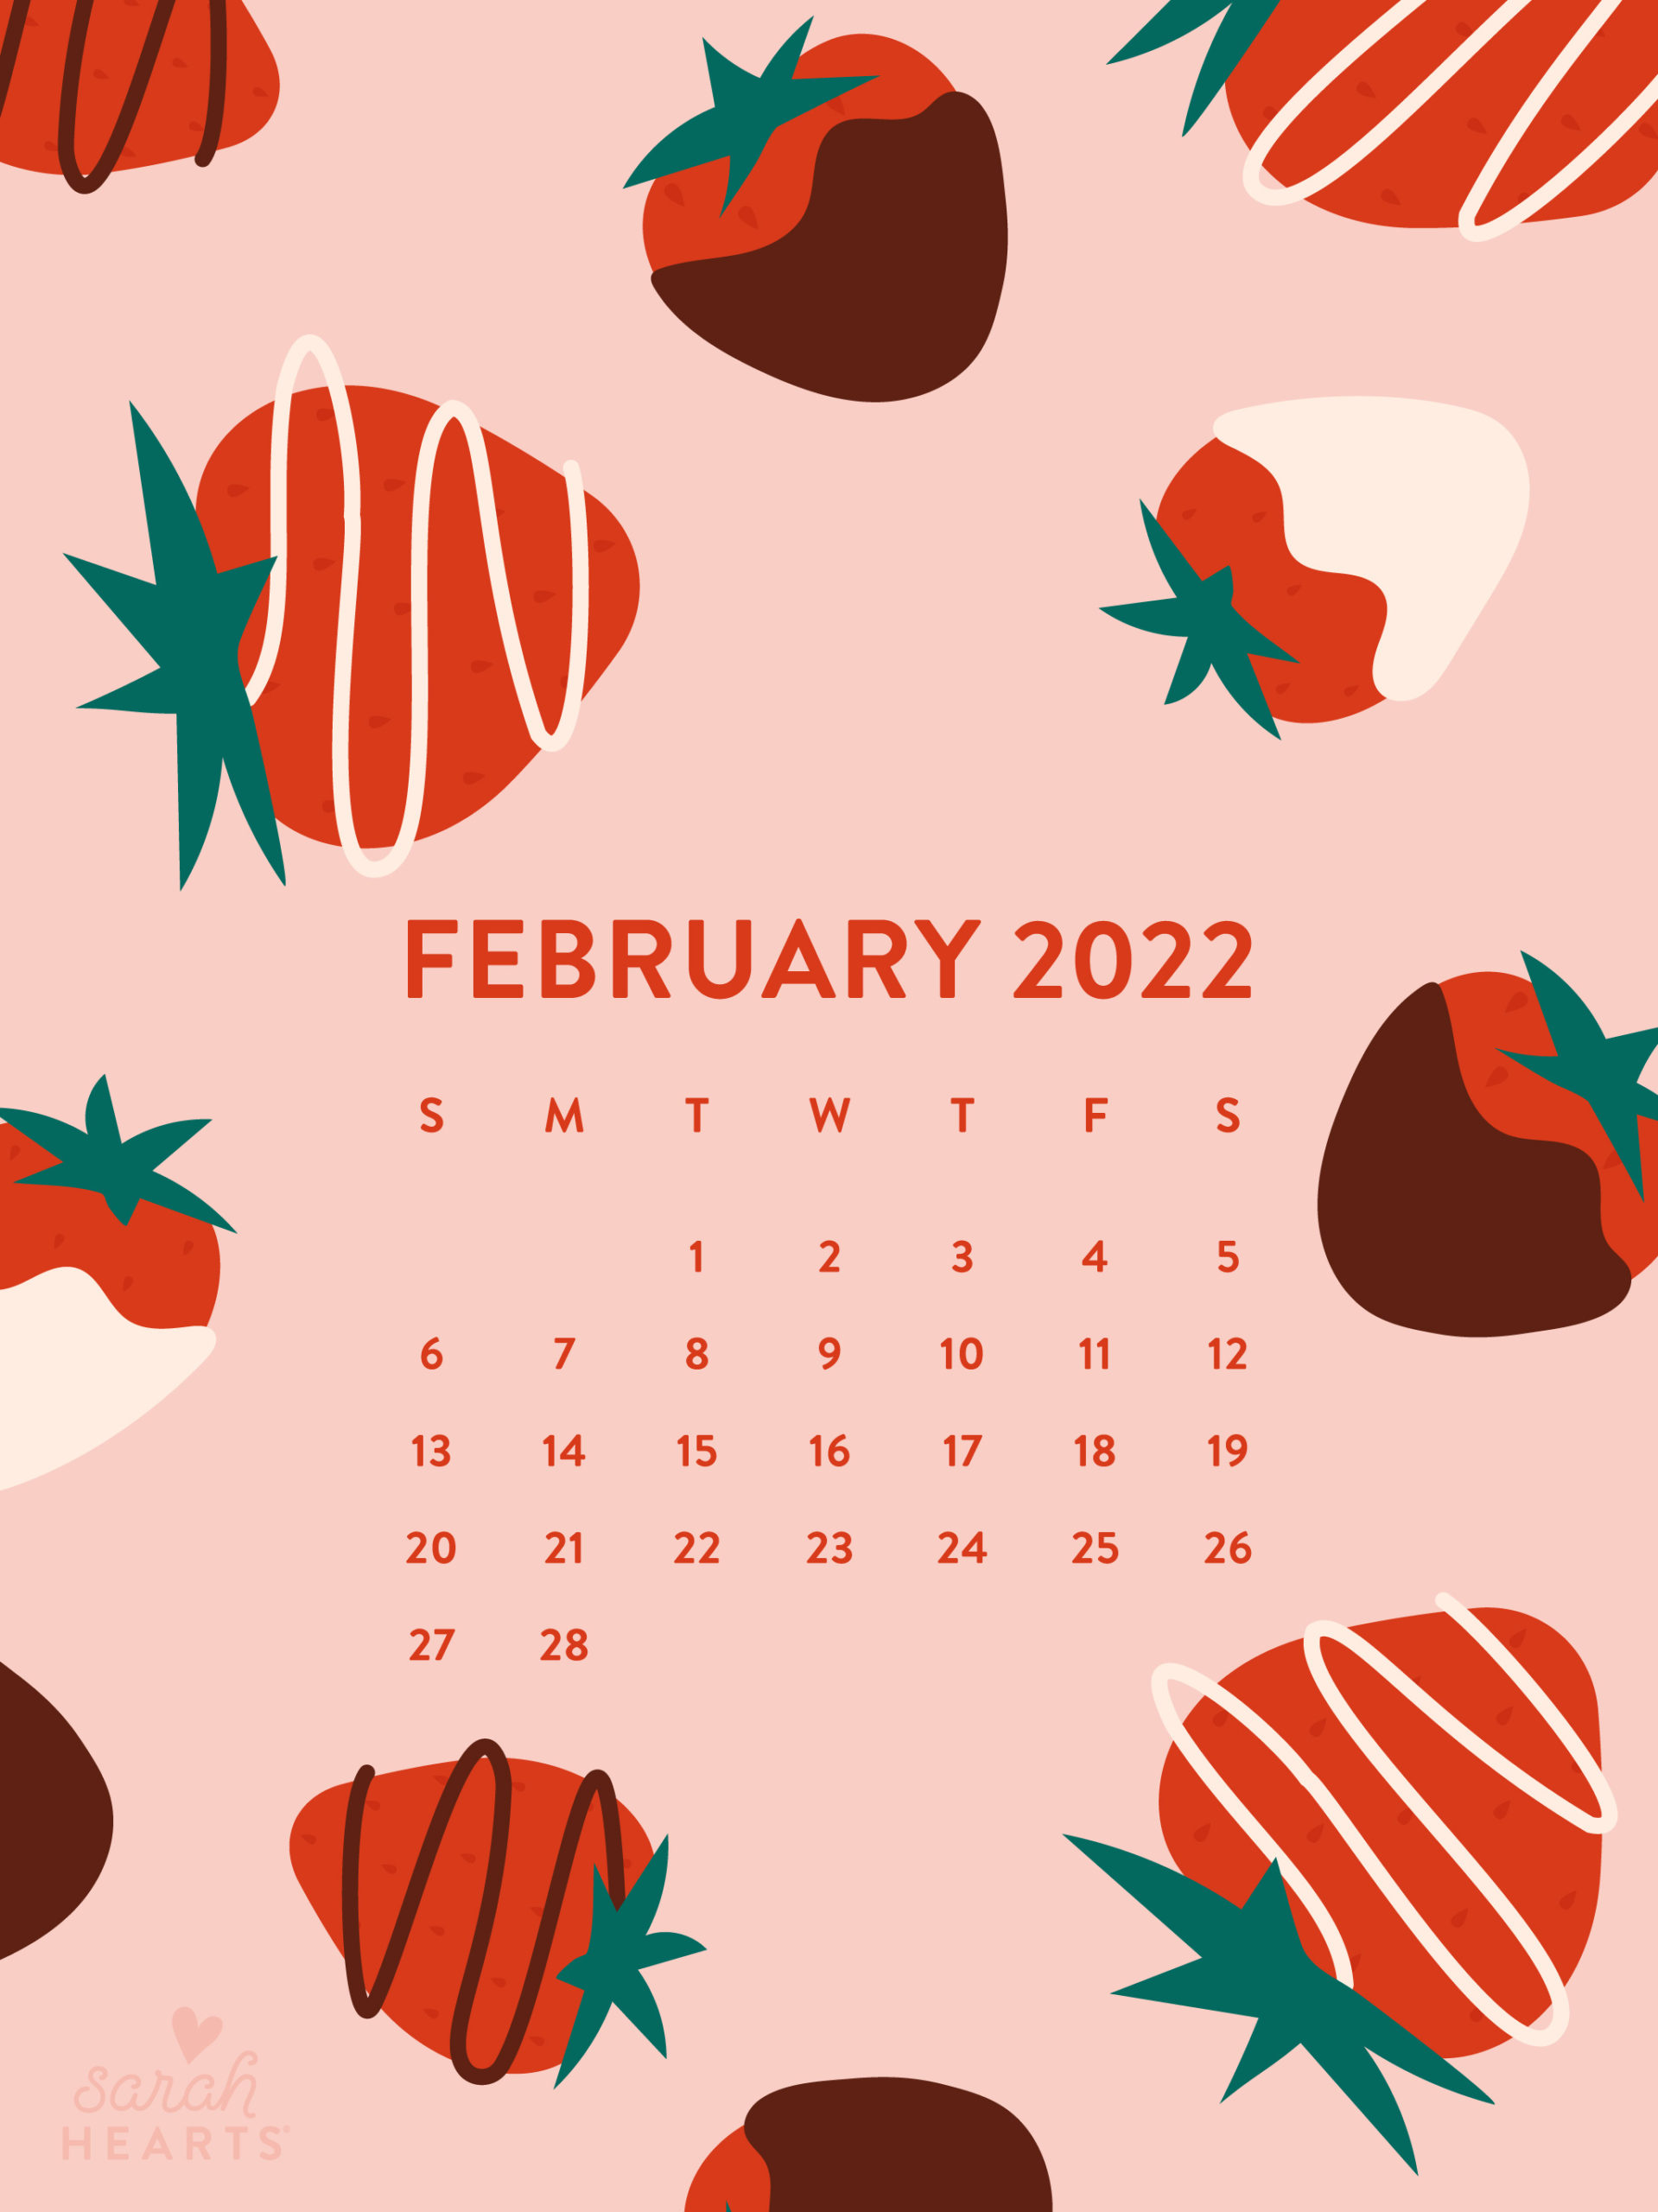 February, 2022